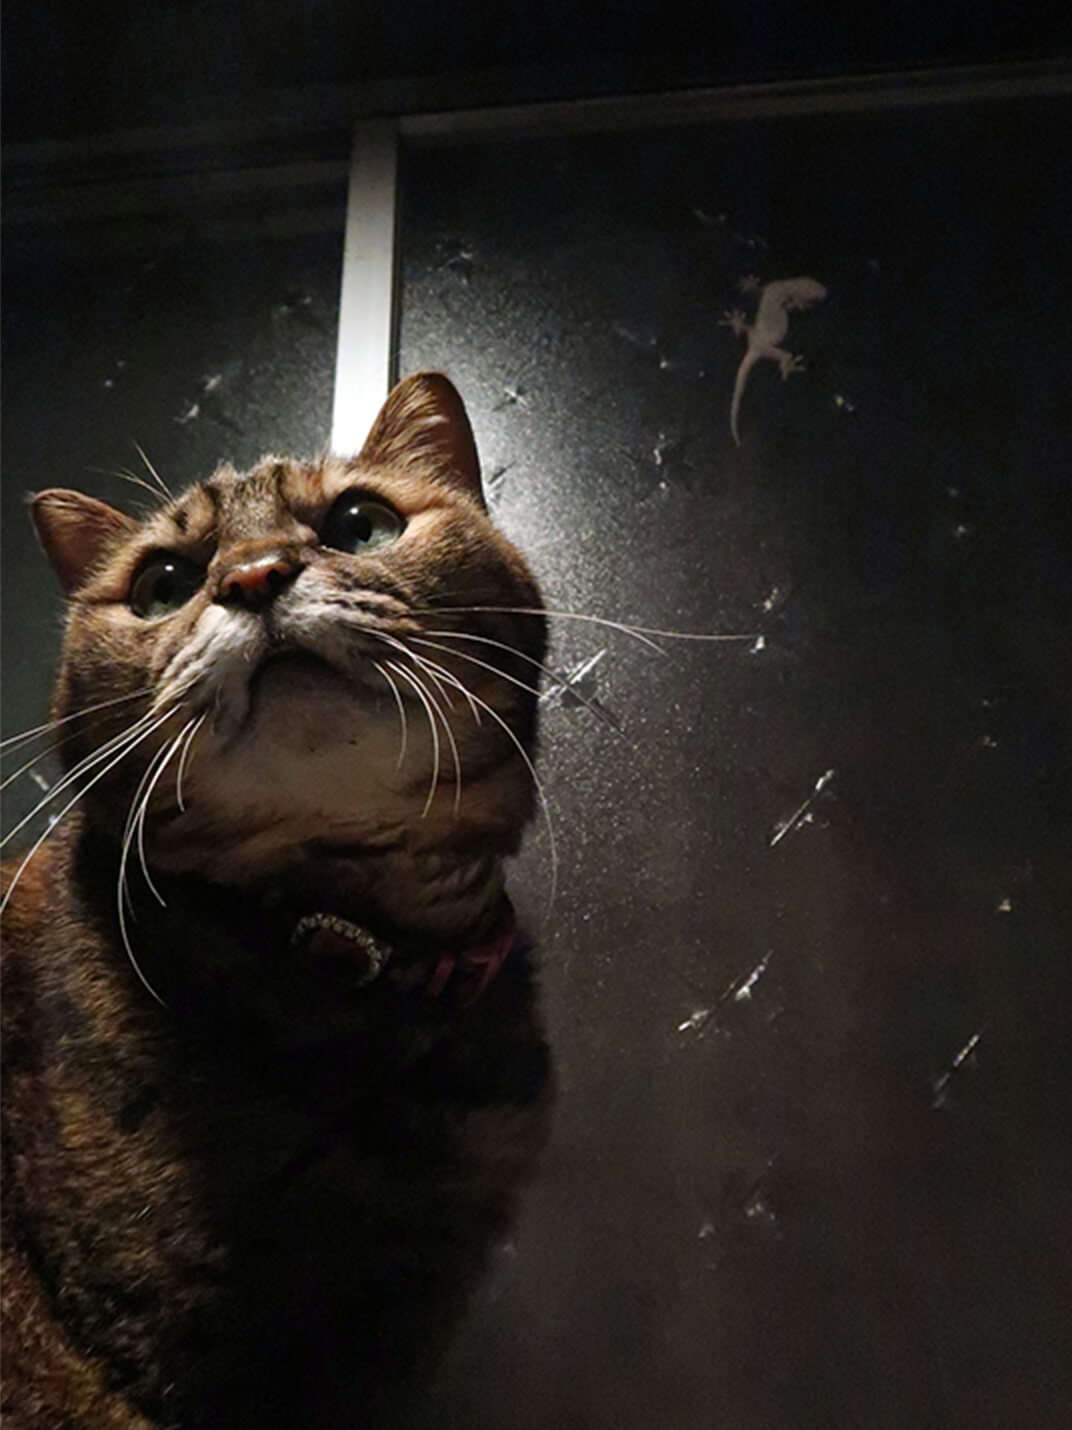 窓辺で振り向く保護猫の写真。窓にはヤモリがいる